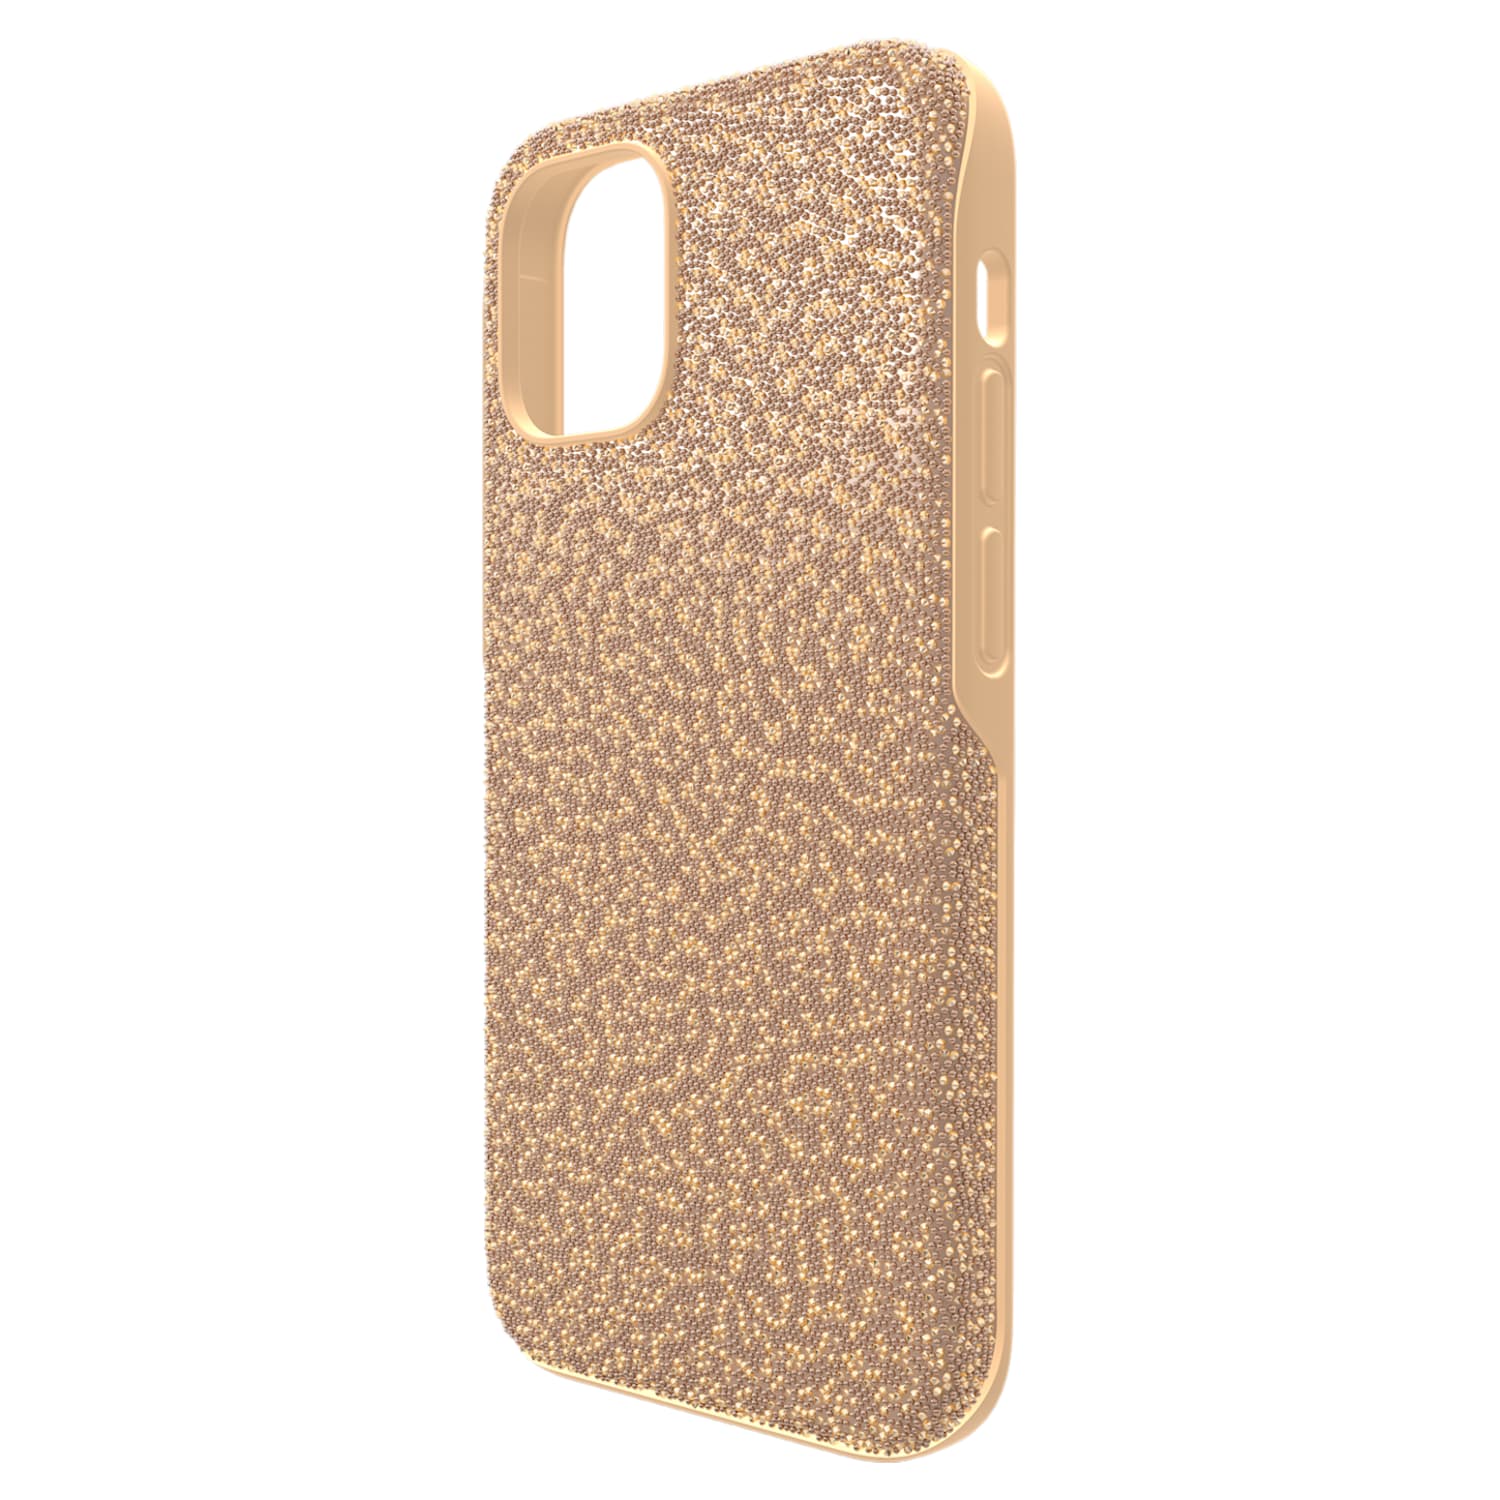 スマートフォン/携帯電話 スマートフォン本体 High smartphone case, iPhone® 12 Pro Max, Gold tone | Swarovski